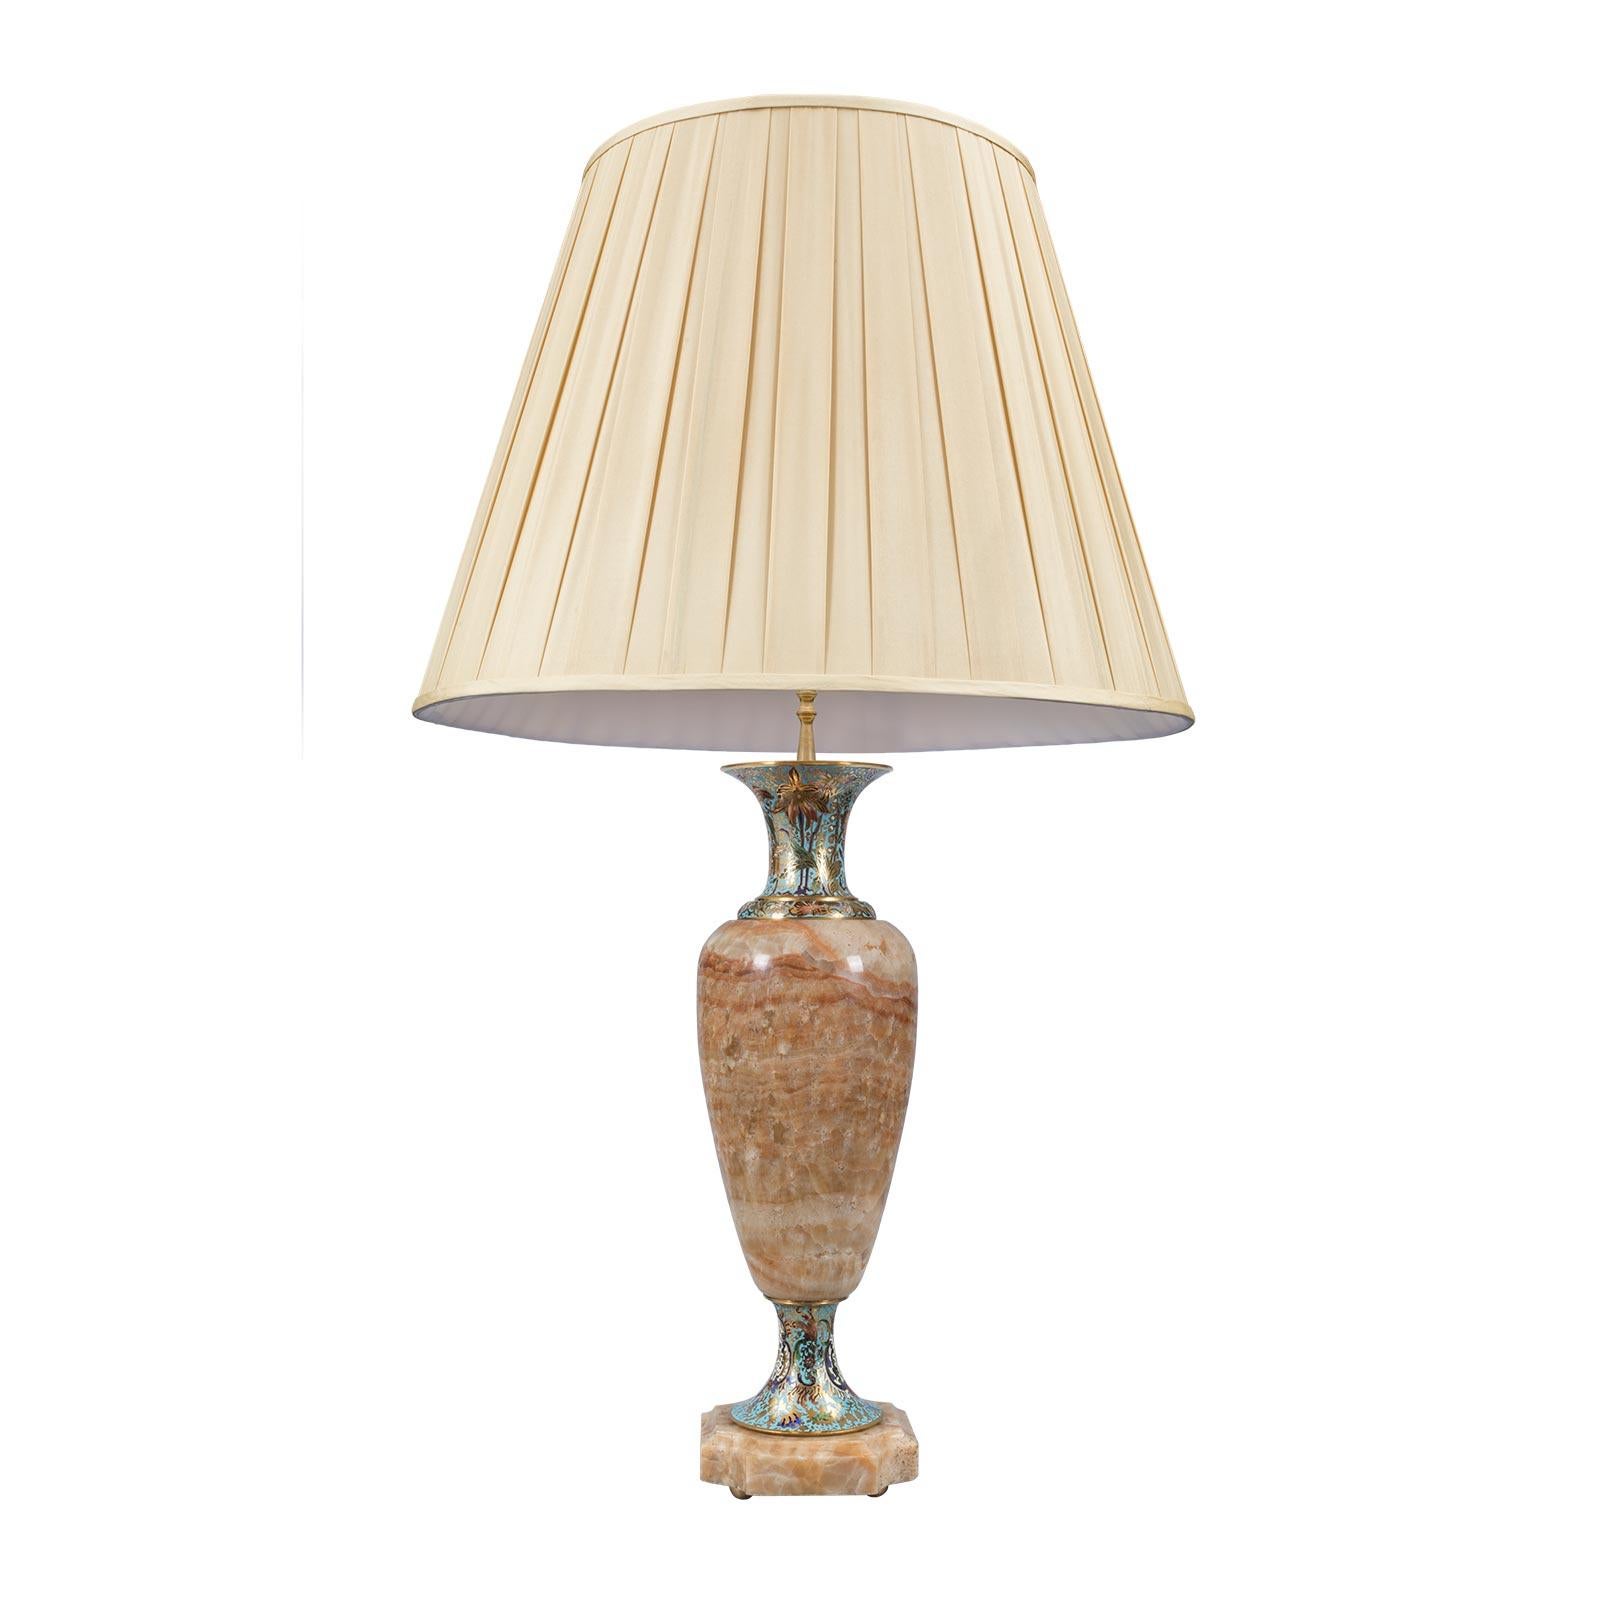 Lampe de haute qualité de style Louis XVI du 19ème siècle en onyx et cloisonné. La lampe est surélevée par des pieds demi-ronds en bronze doré sous une base carrée en onyx aux angles concaves et aux bords mouchetés. Le merveilleux corps est en onyx